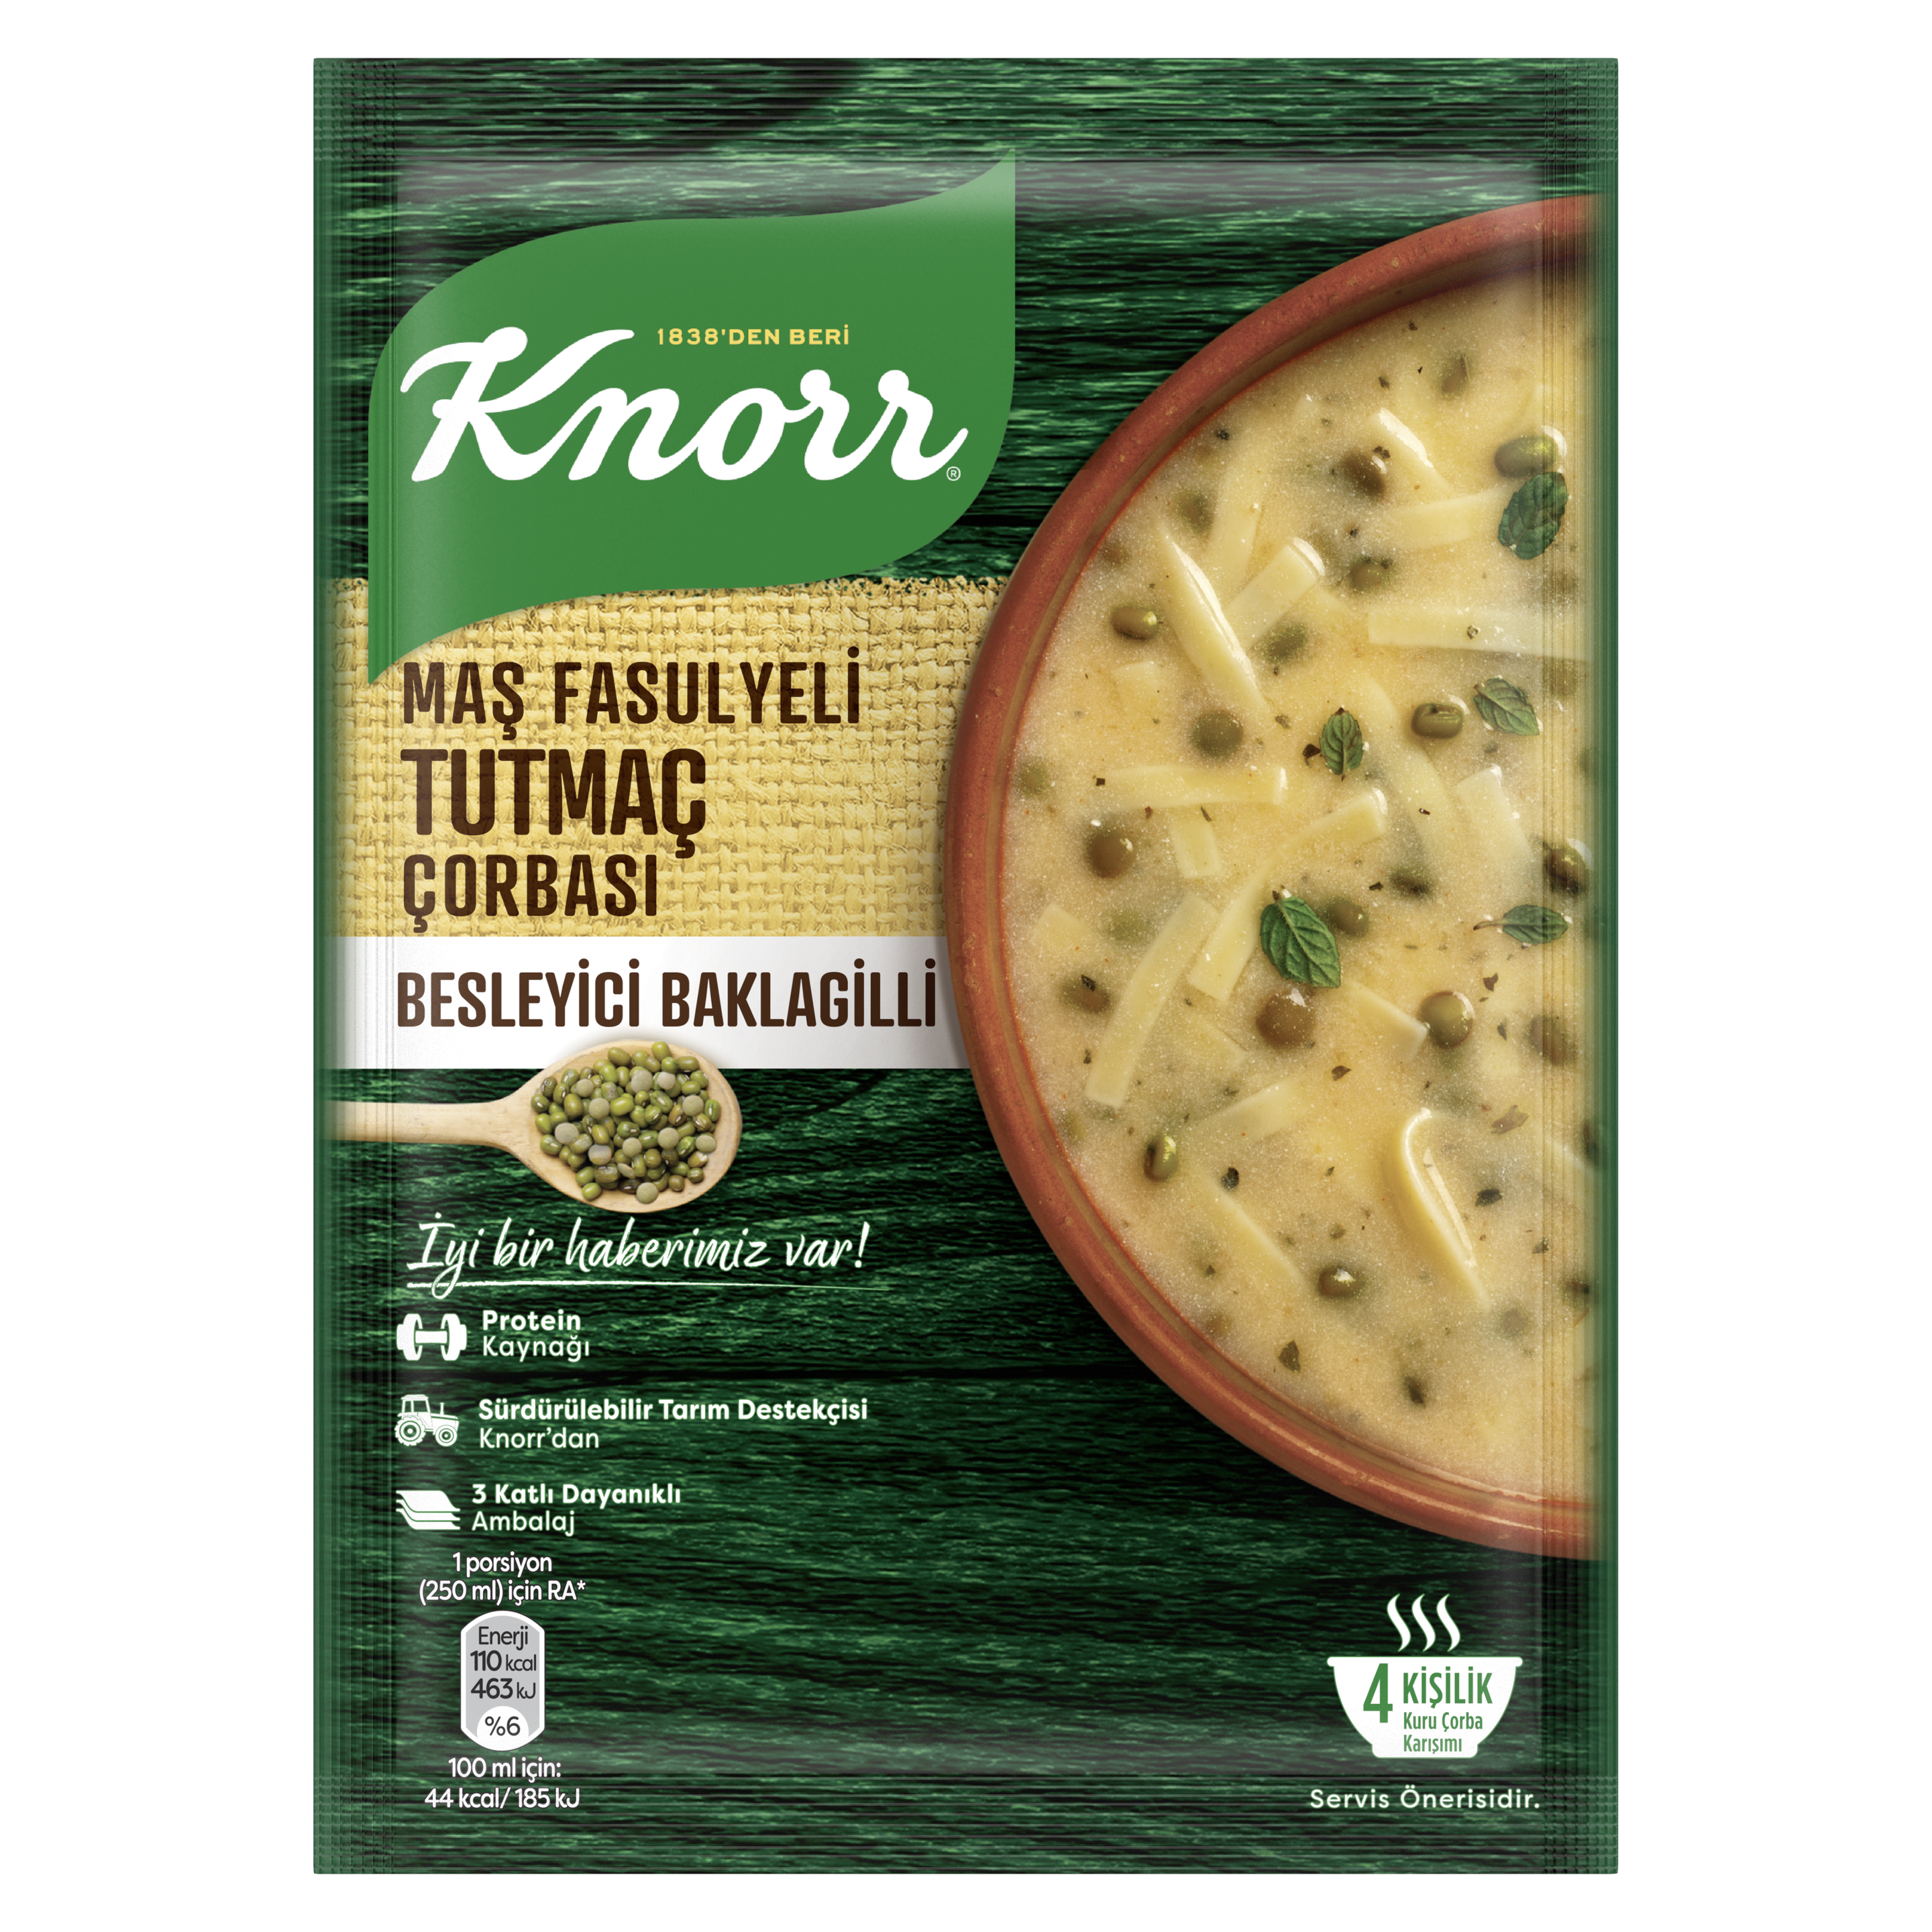 Knorr Maş Fasülyeli Tutmaç Çorbası